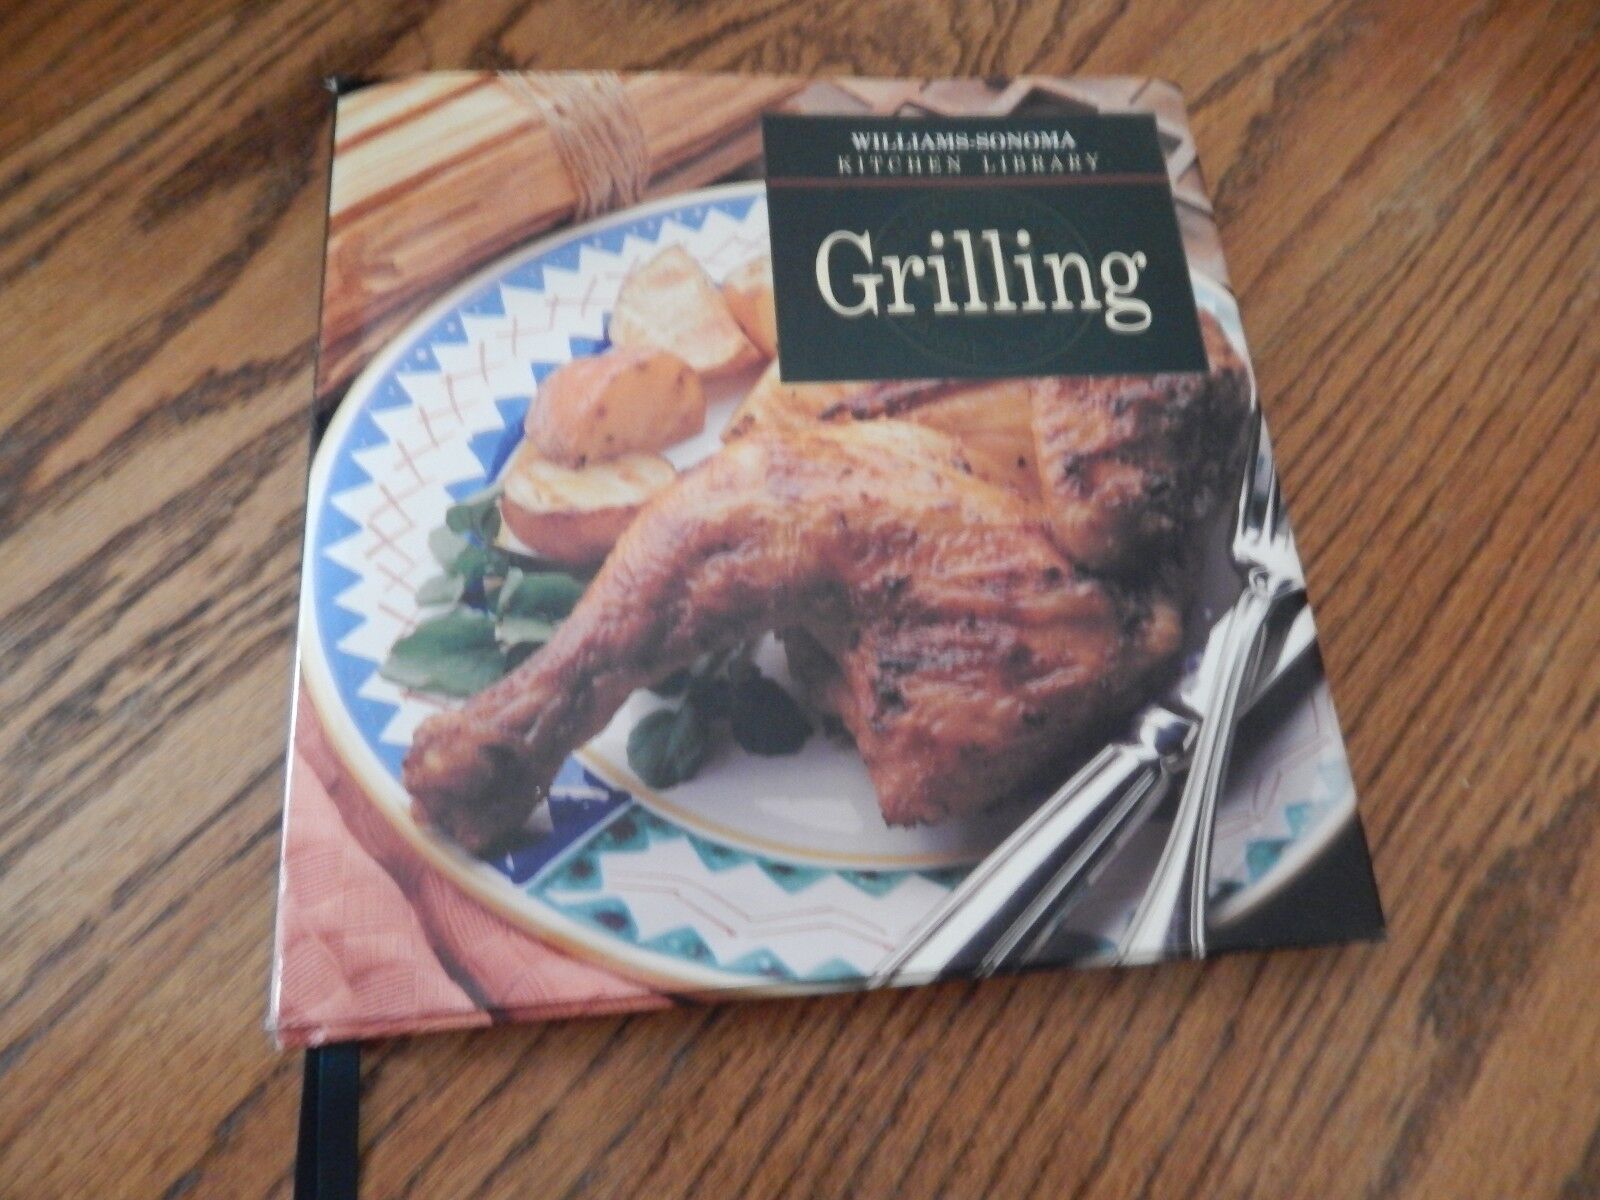 Williams-Sonoma Kitchen Library “Grilling” Recipe Book